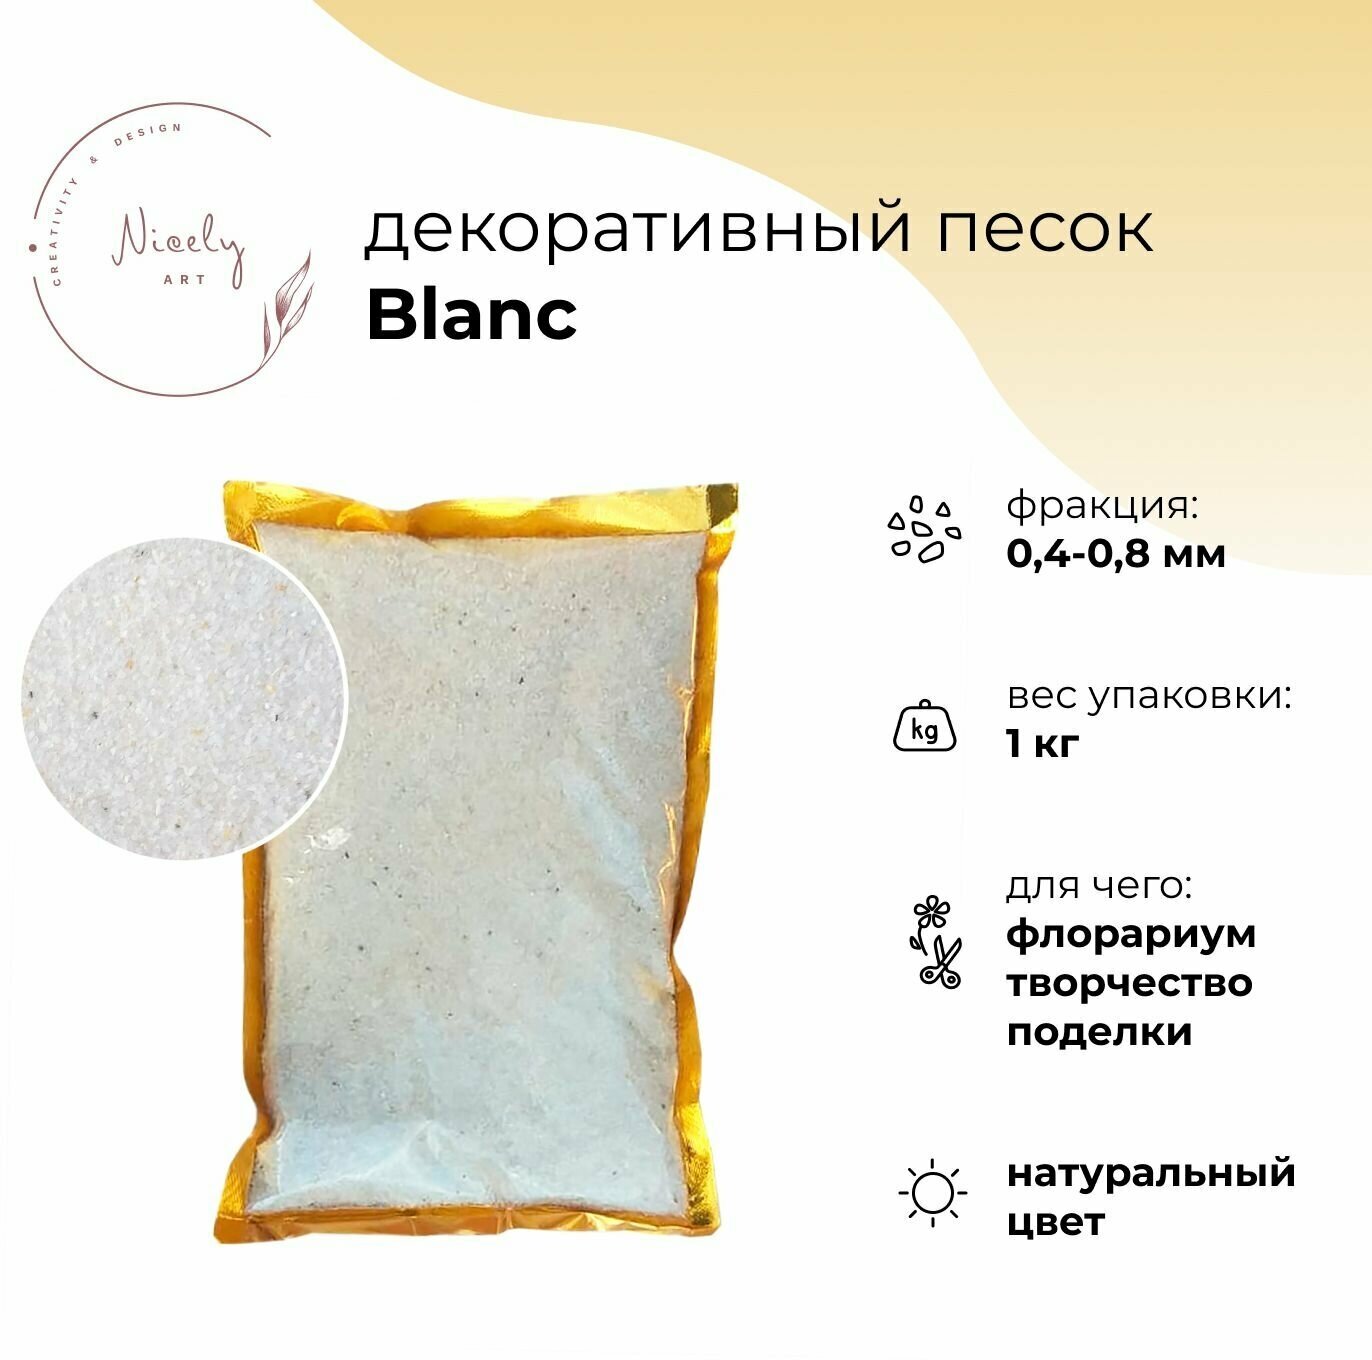 Декоративный минеральный песок NICELY Blanc, 1 кг, для творчества и поделок, для флорариума, 0,4-0,8 мм